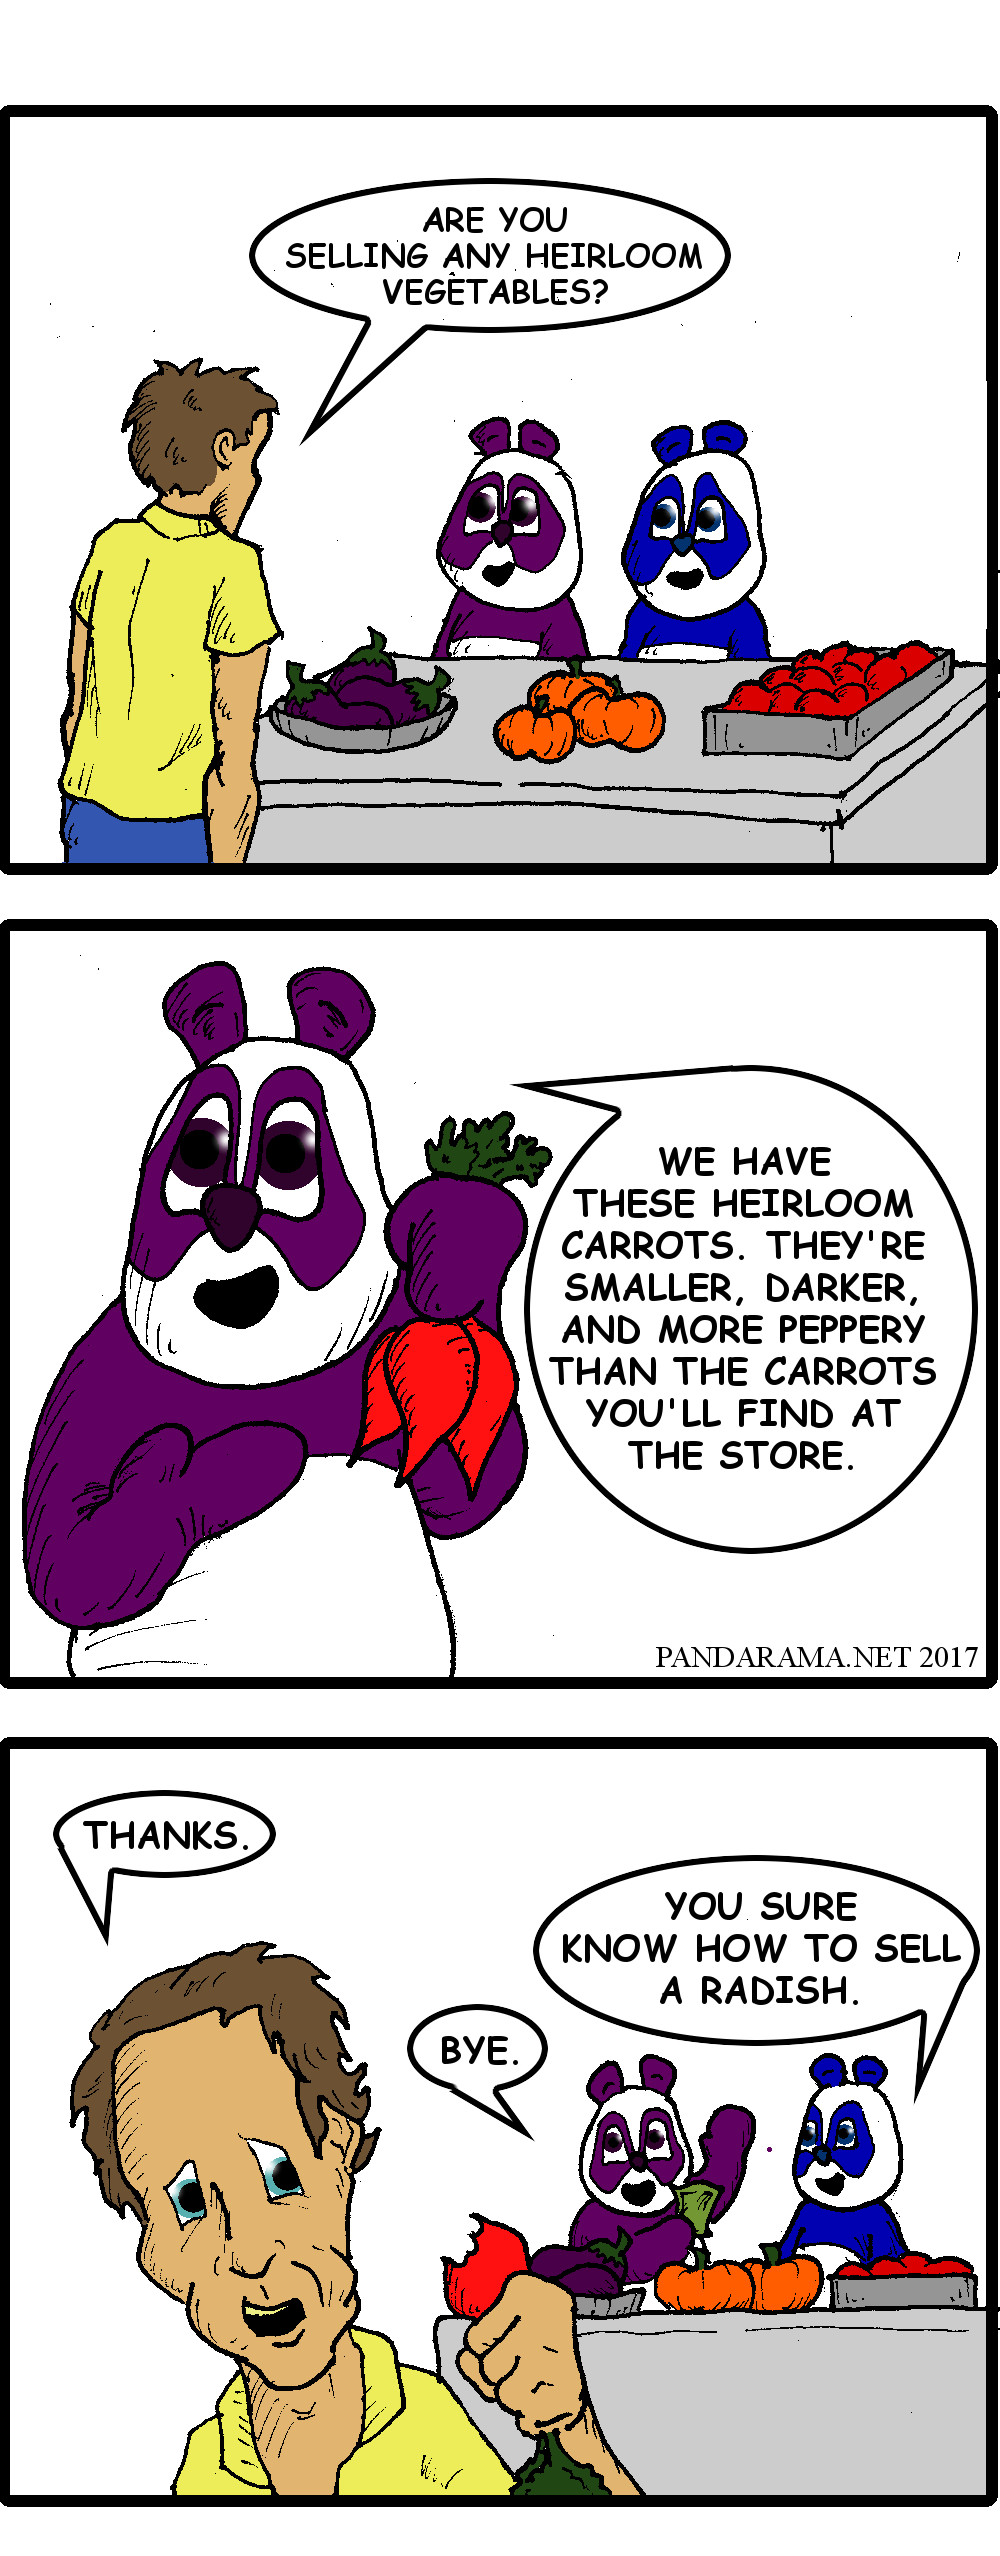 Pandarama cartoon. farmer selling radish as heirloom carrot.